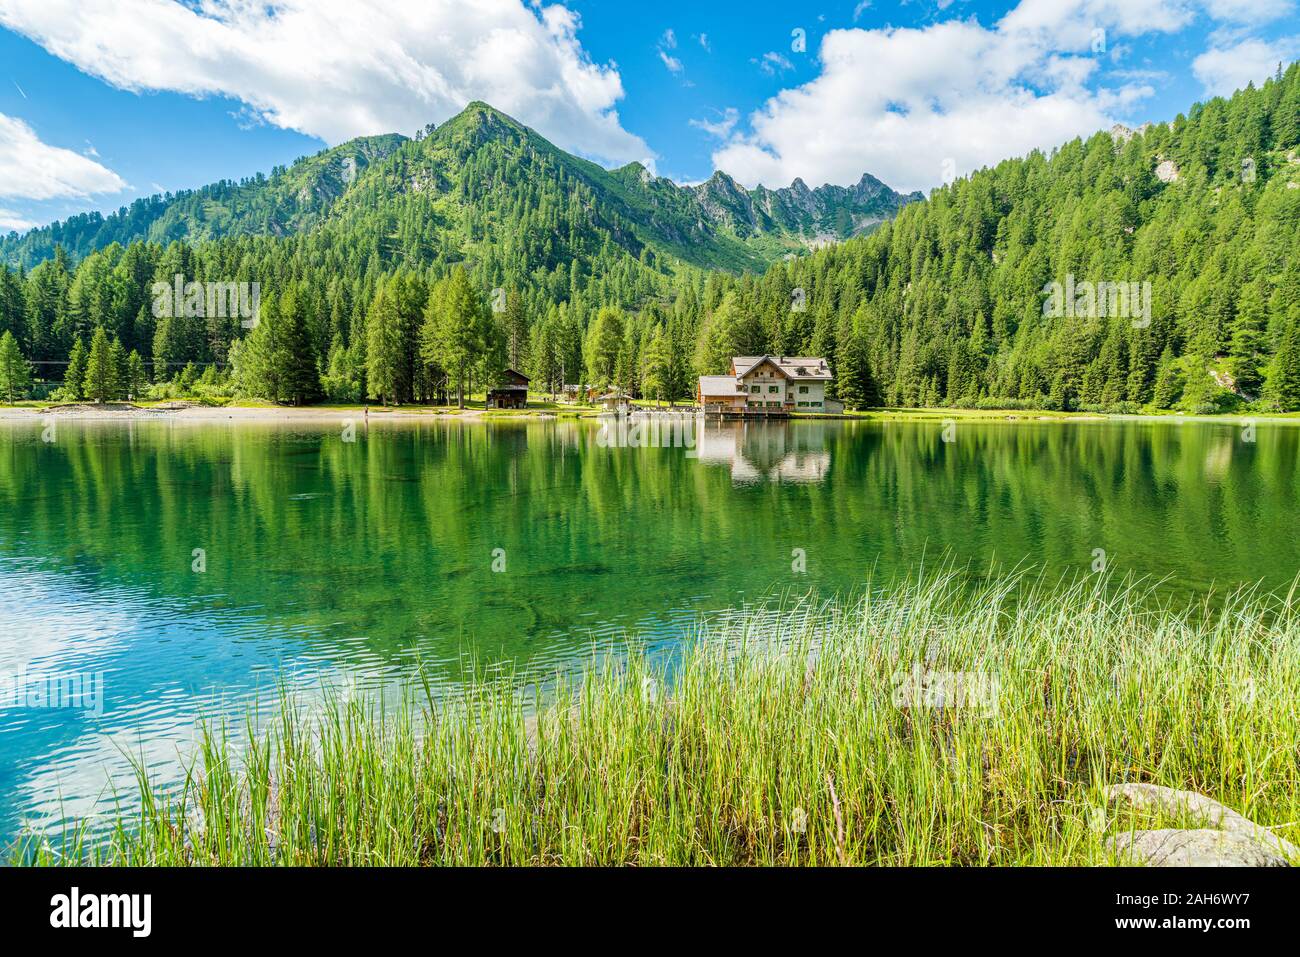 Paysage idyllique au lac Nambino, près de Madonna di Campiglio. Province de Trente, Trentin-Haut-Adige, Italie du nord. Banque D'Images